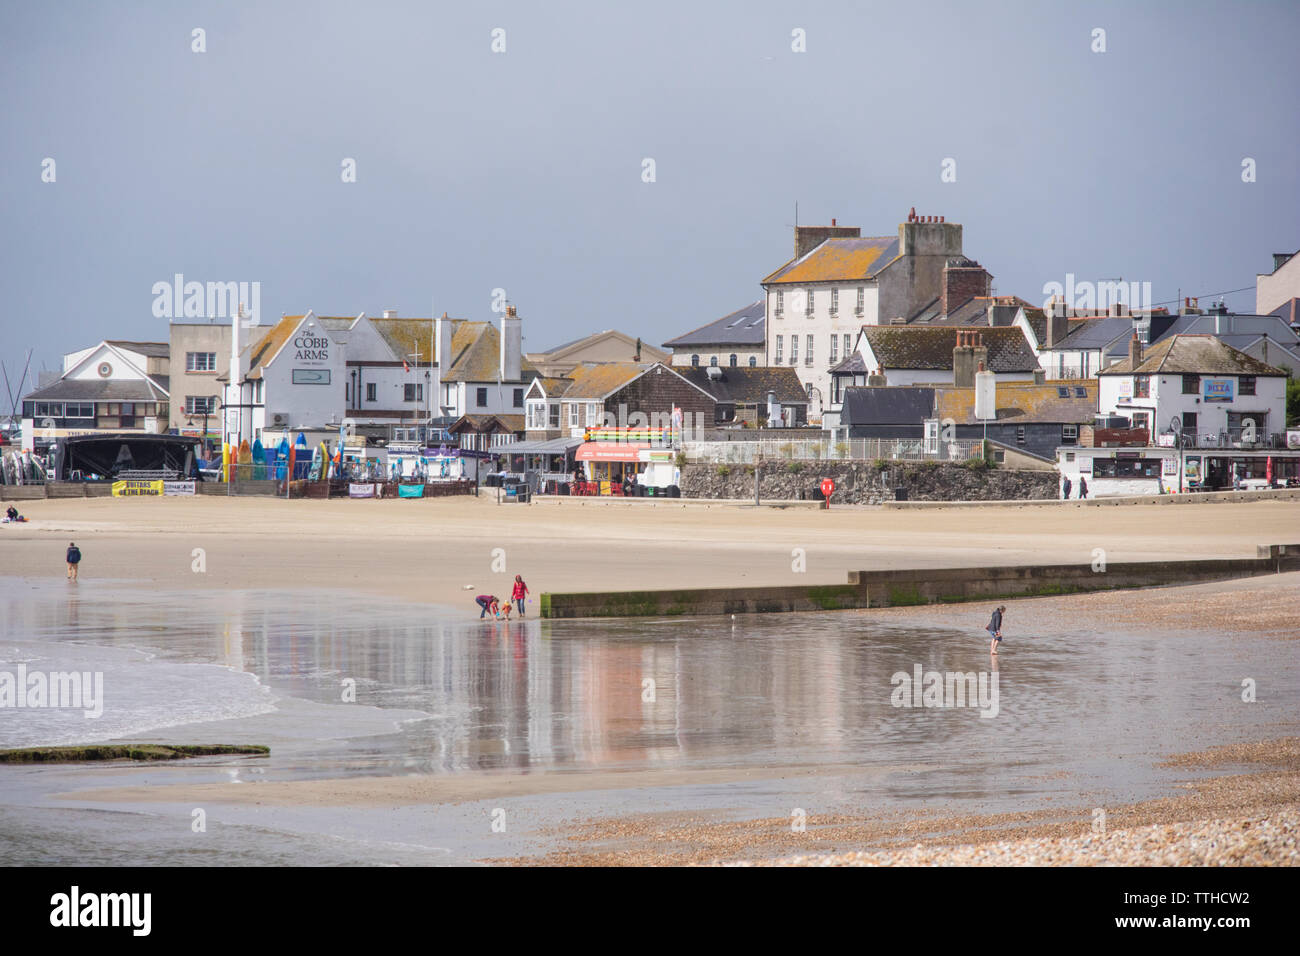 Plages de sable à Lyme Regis, Dorset, England, UK Banque D'Images